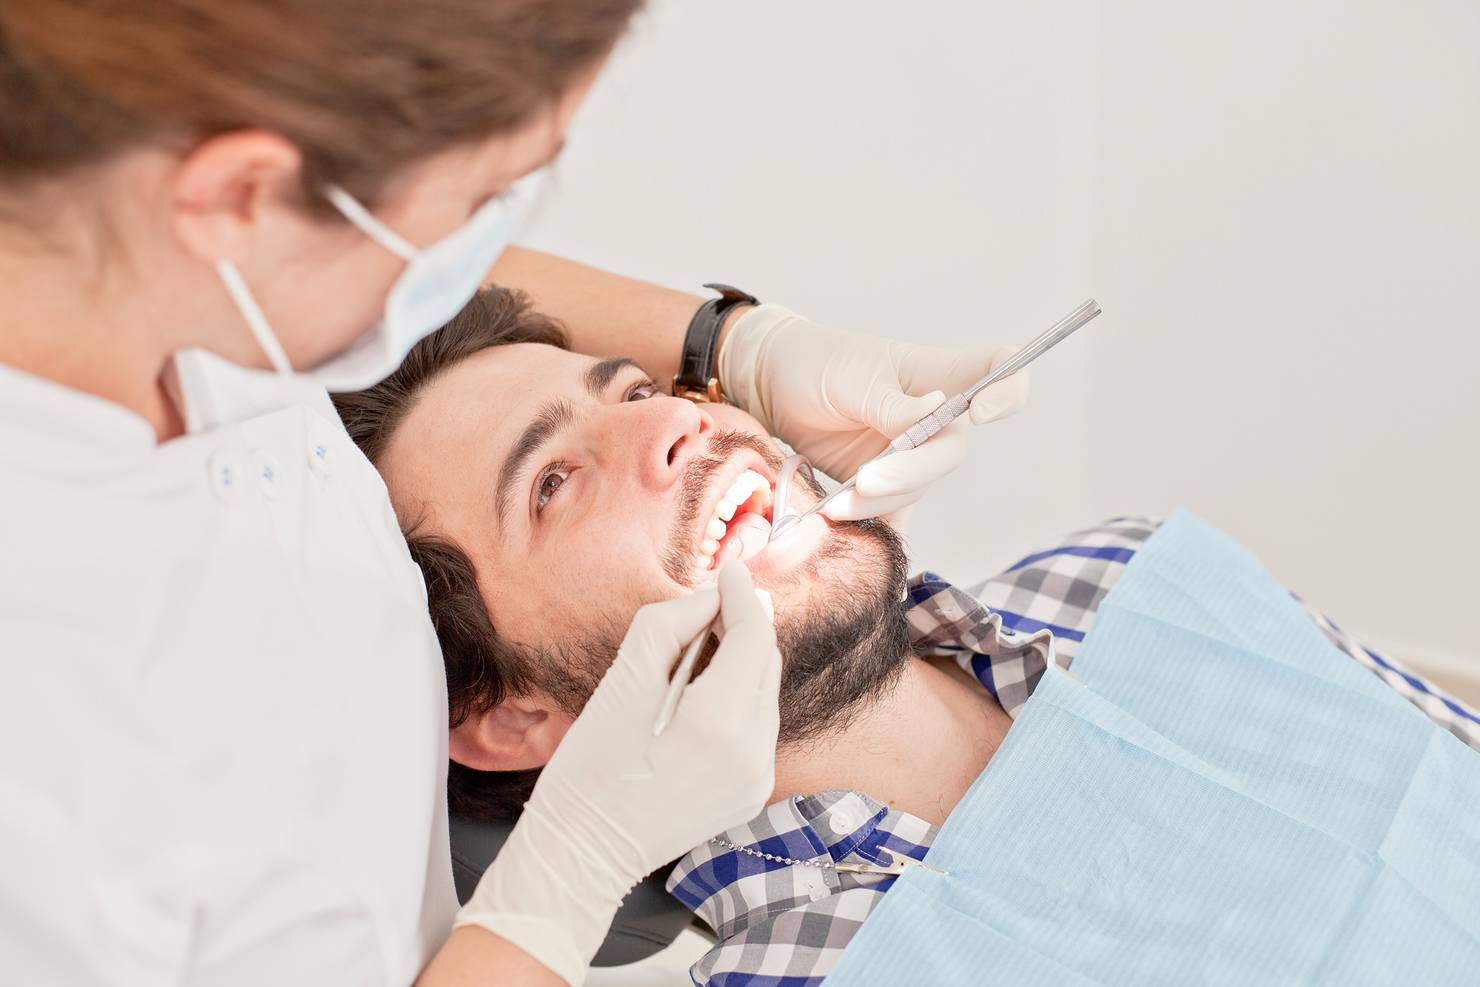 Man having a dental examination